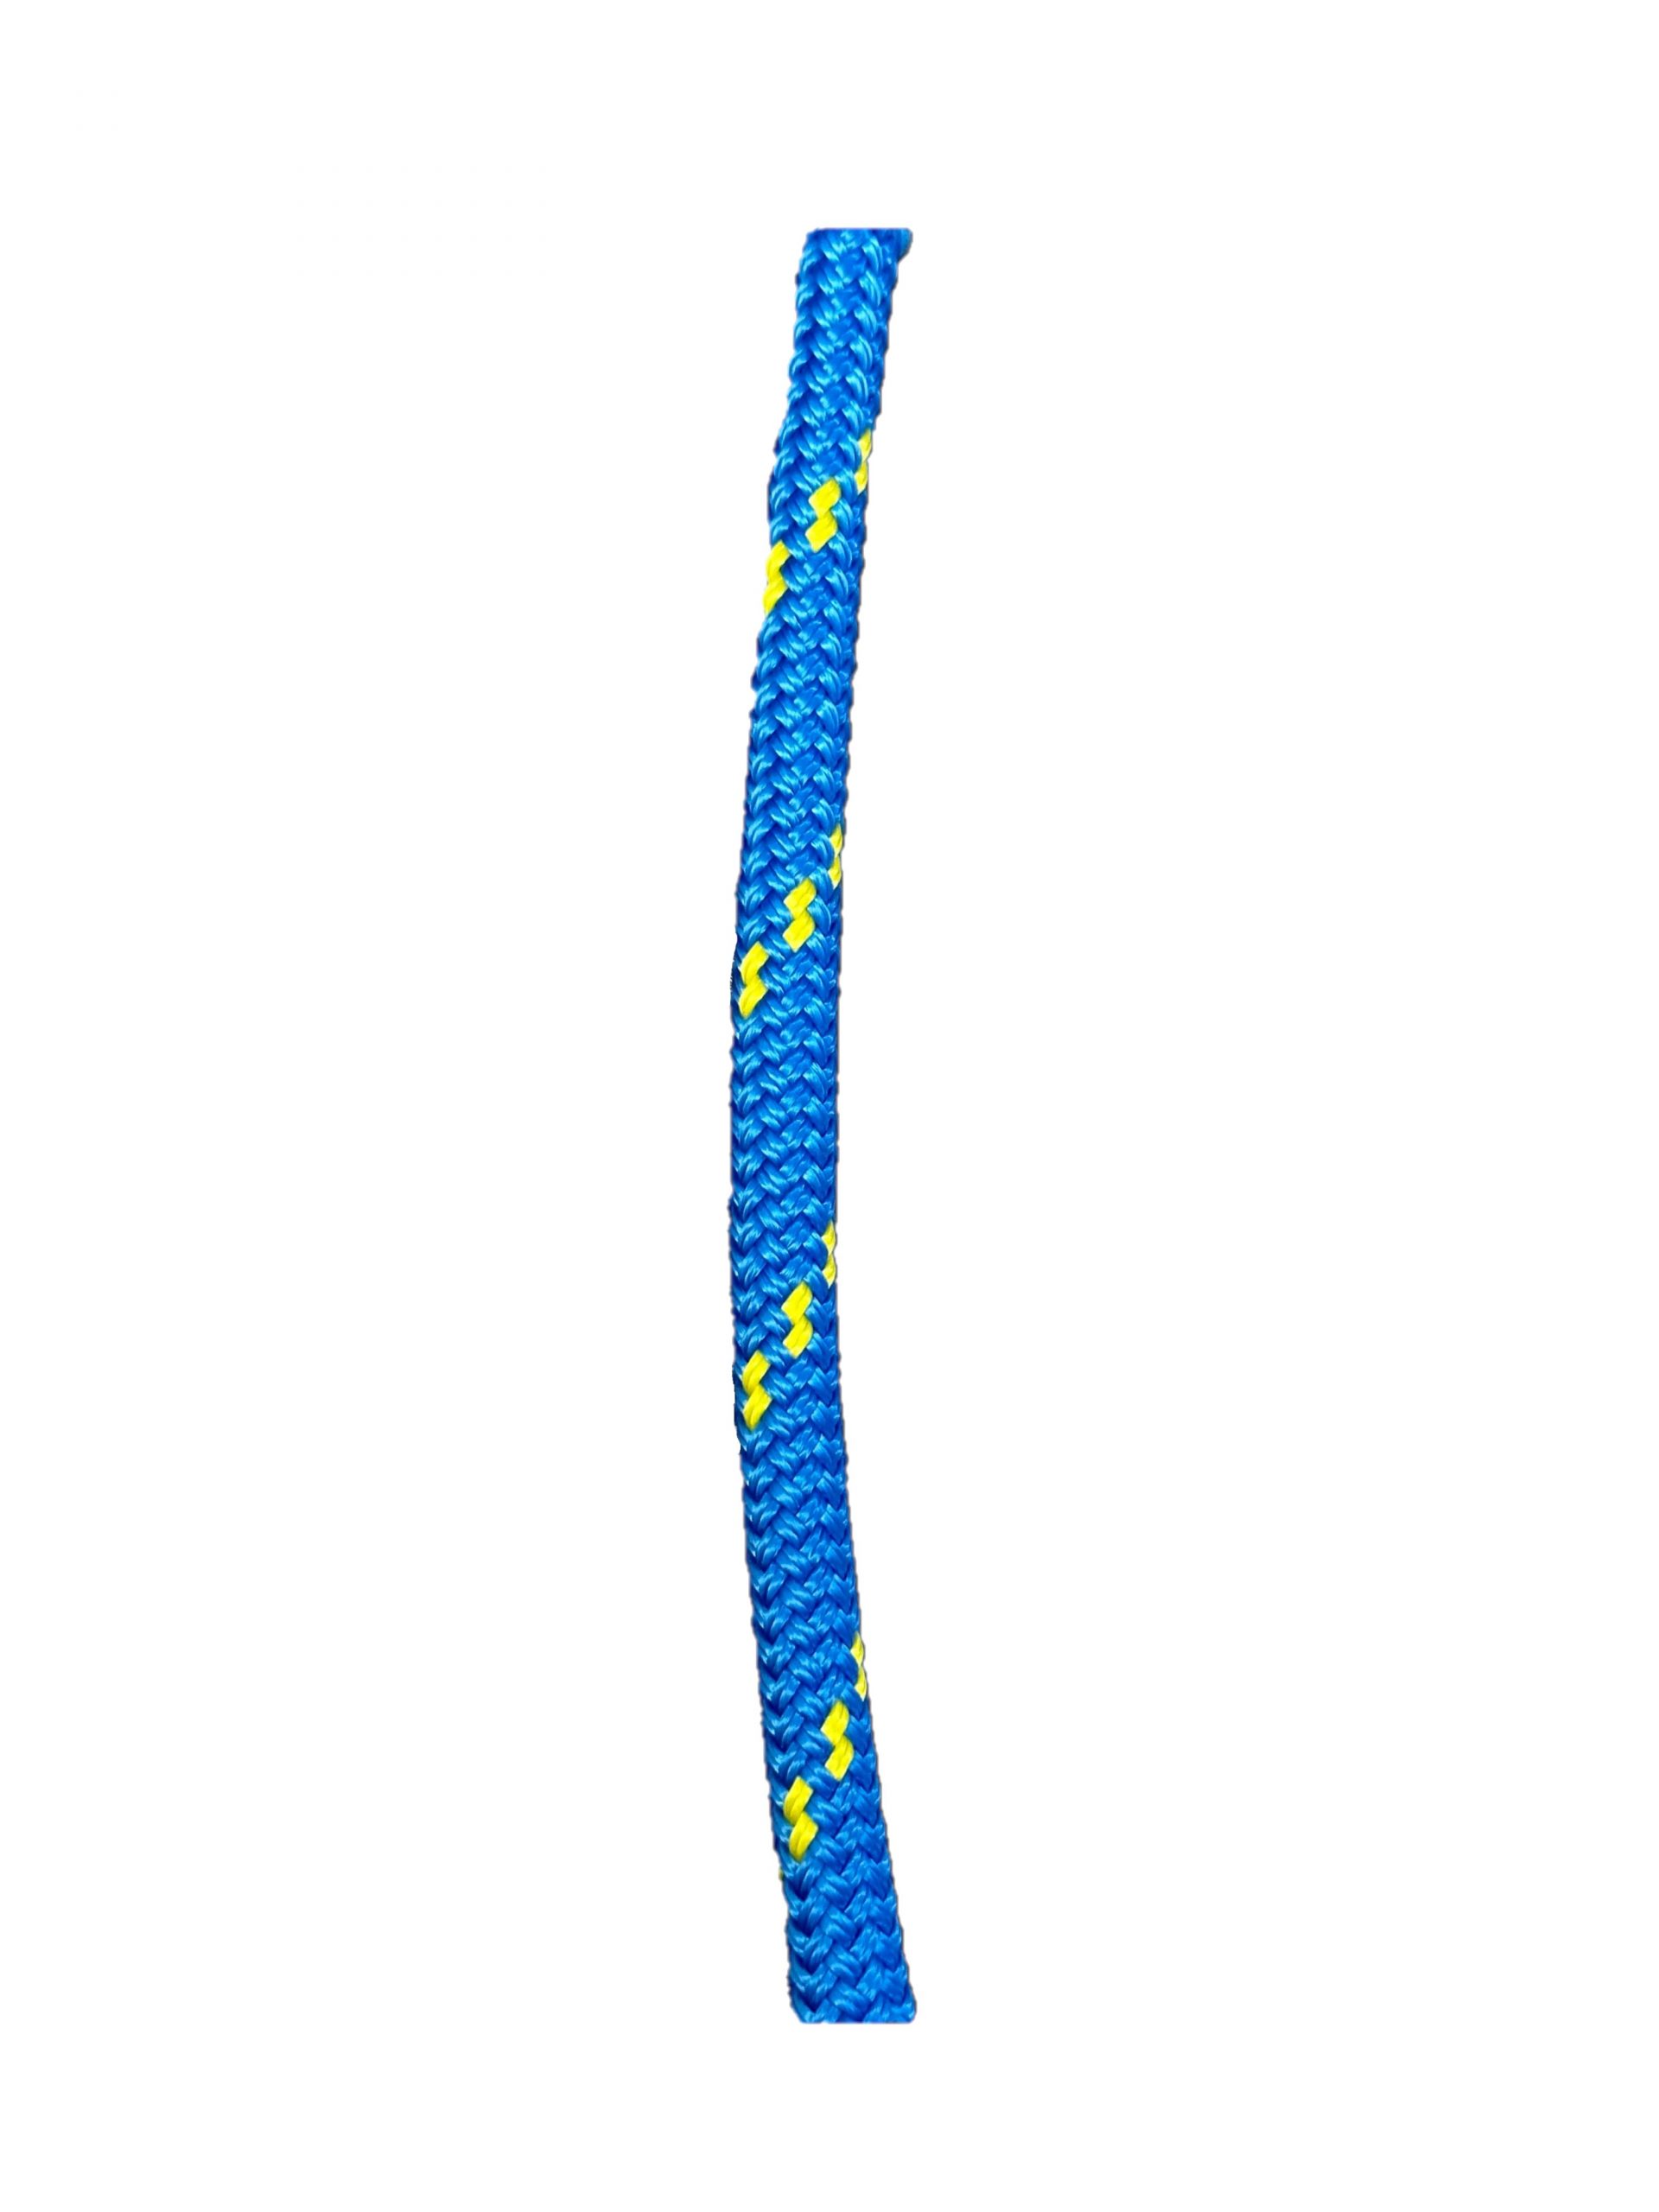 Corde de grimpe Antidote FUSION (11.8mm) - Sécurité Landry